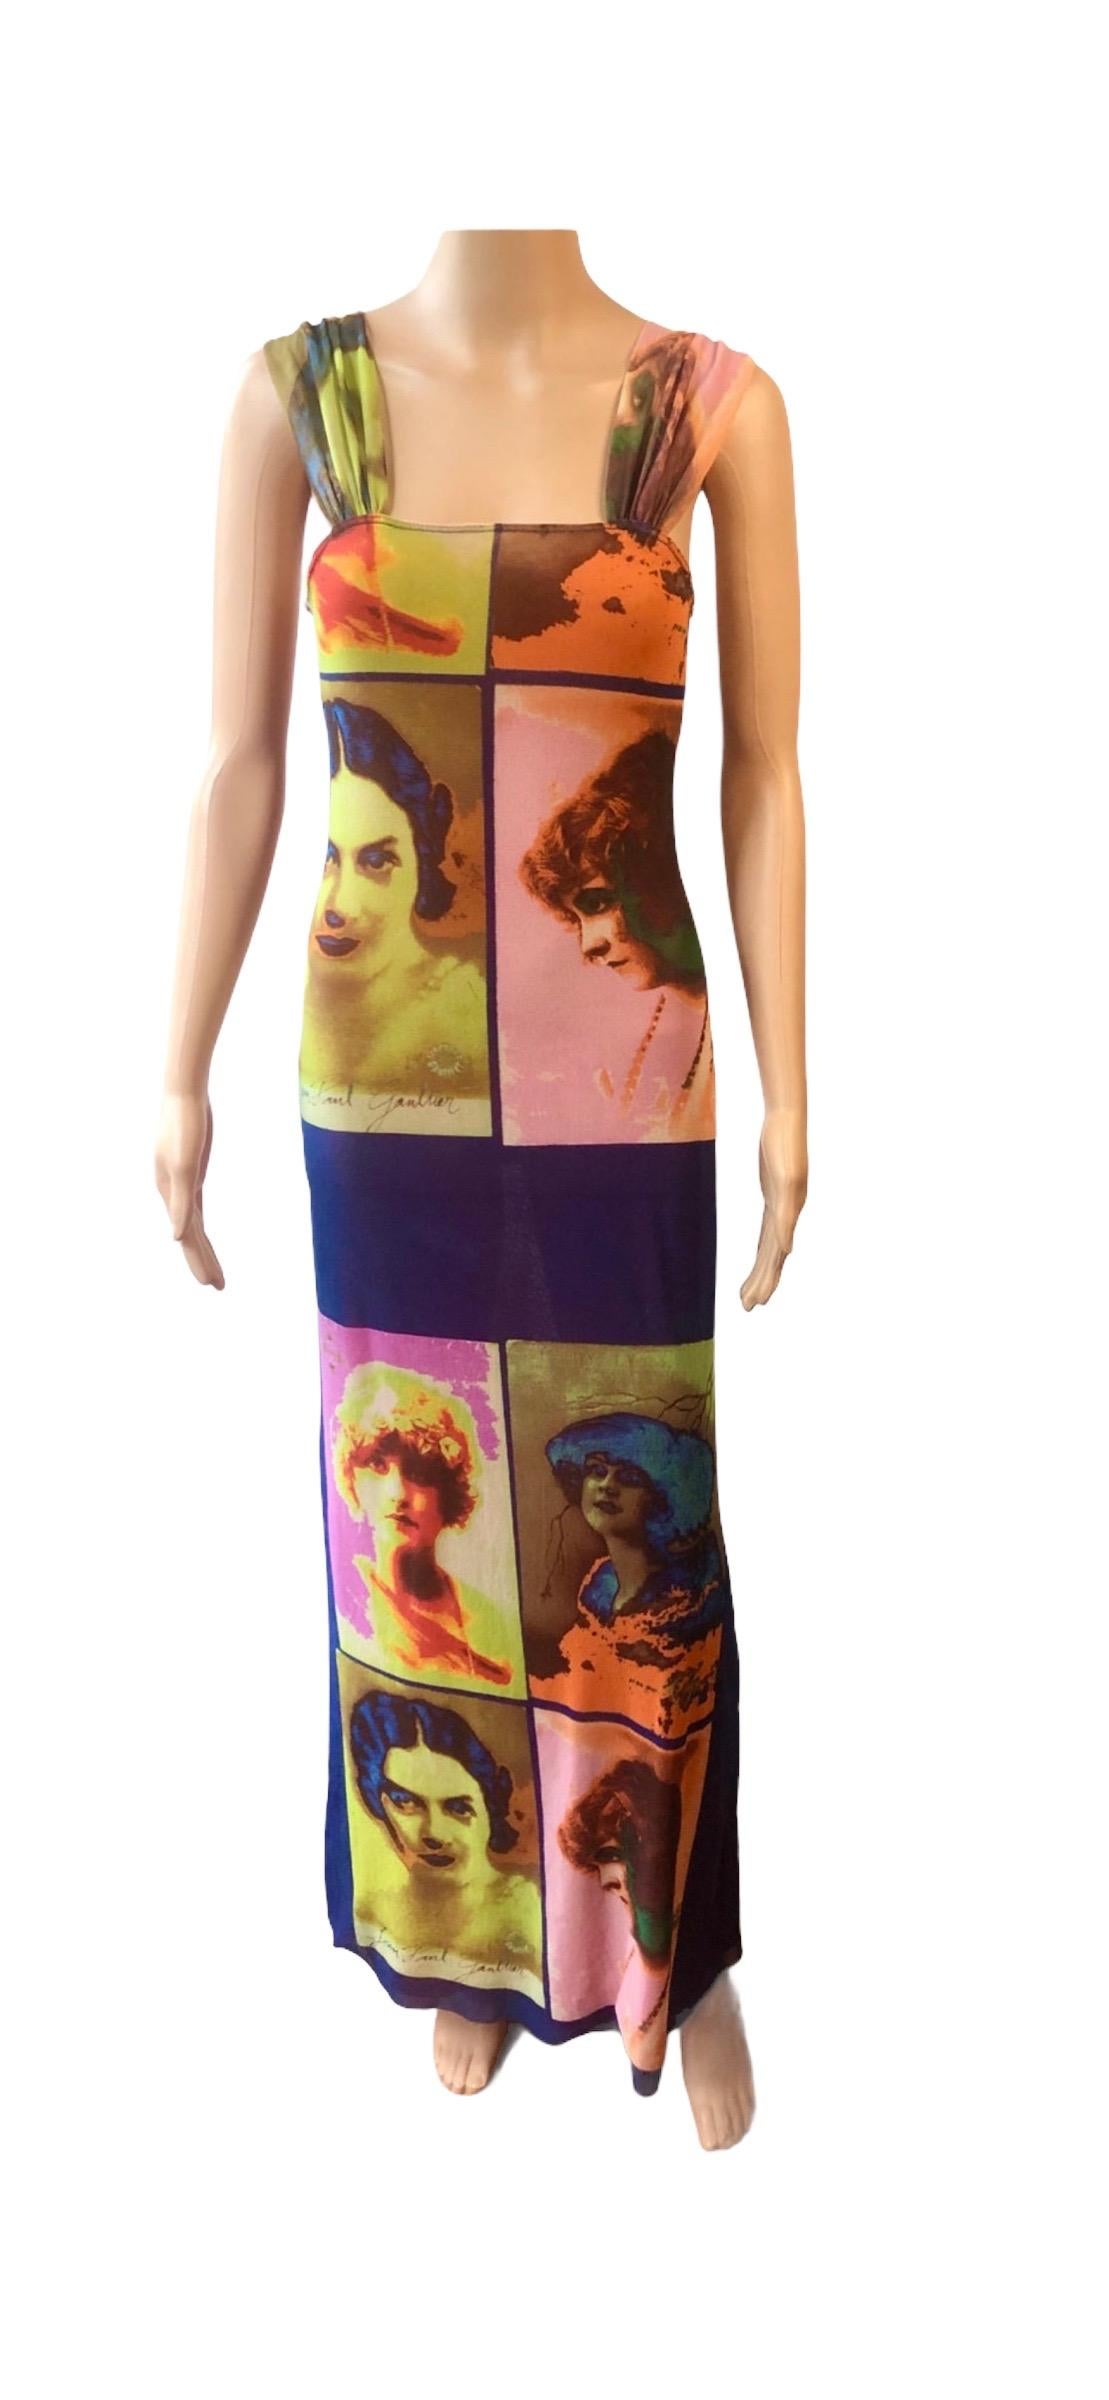 Jean Paul Gaultier Soleil S/S 2002 Vintage “Portraits” Mesh Maxi Dress  For Sale 3